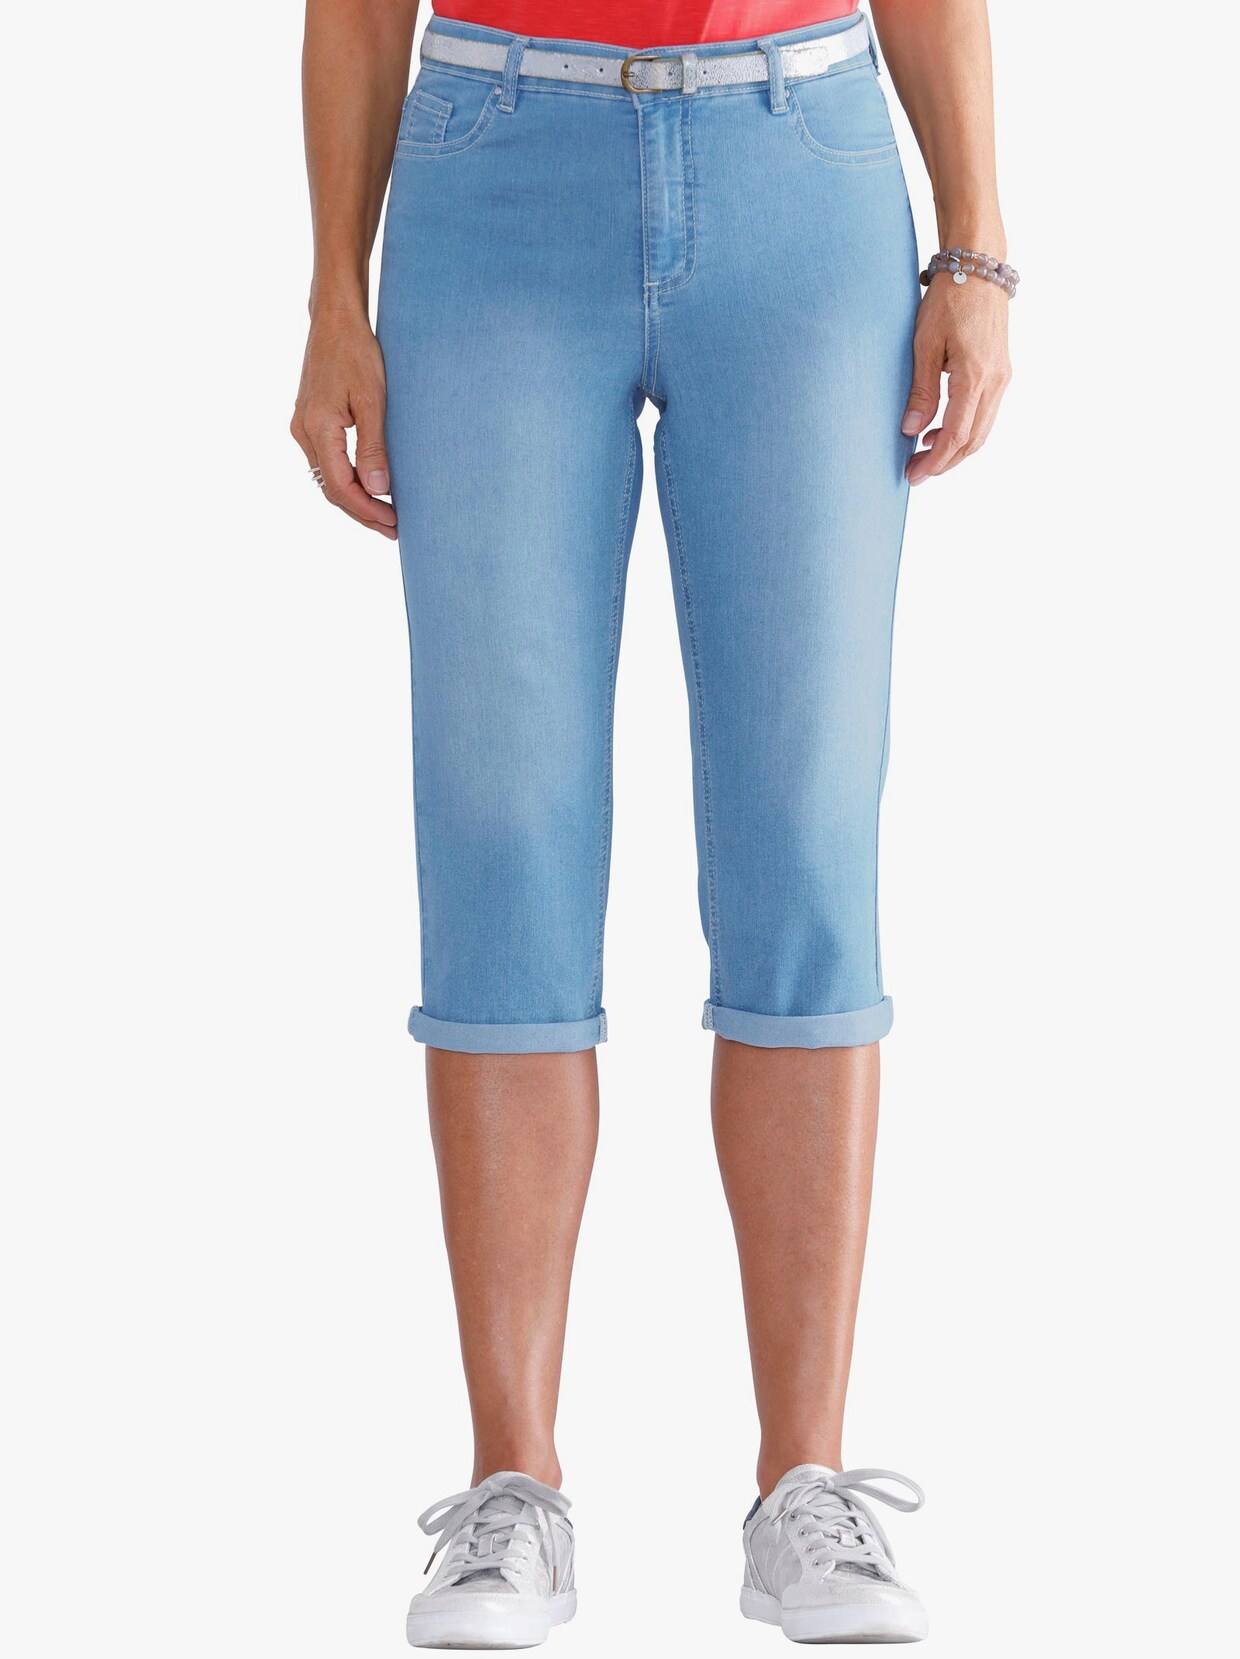 Capri kalhoty - bělená modrá